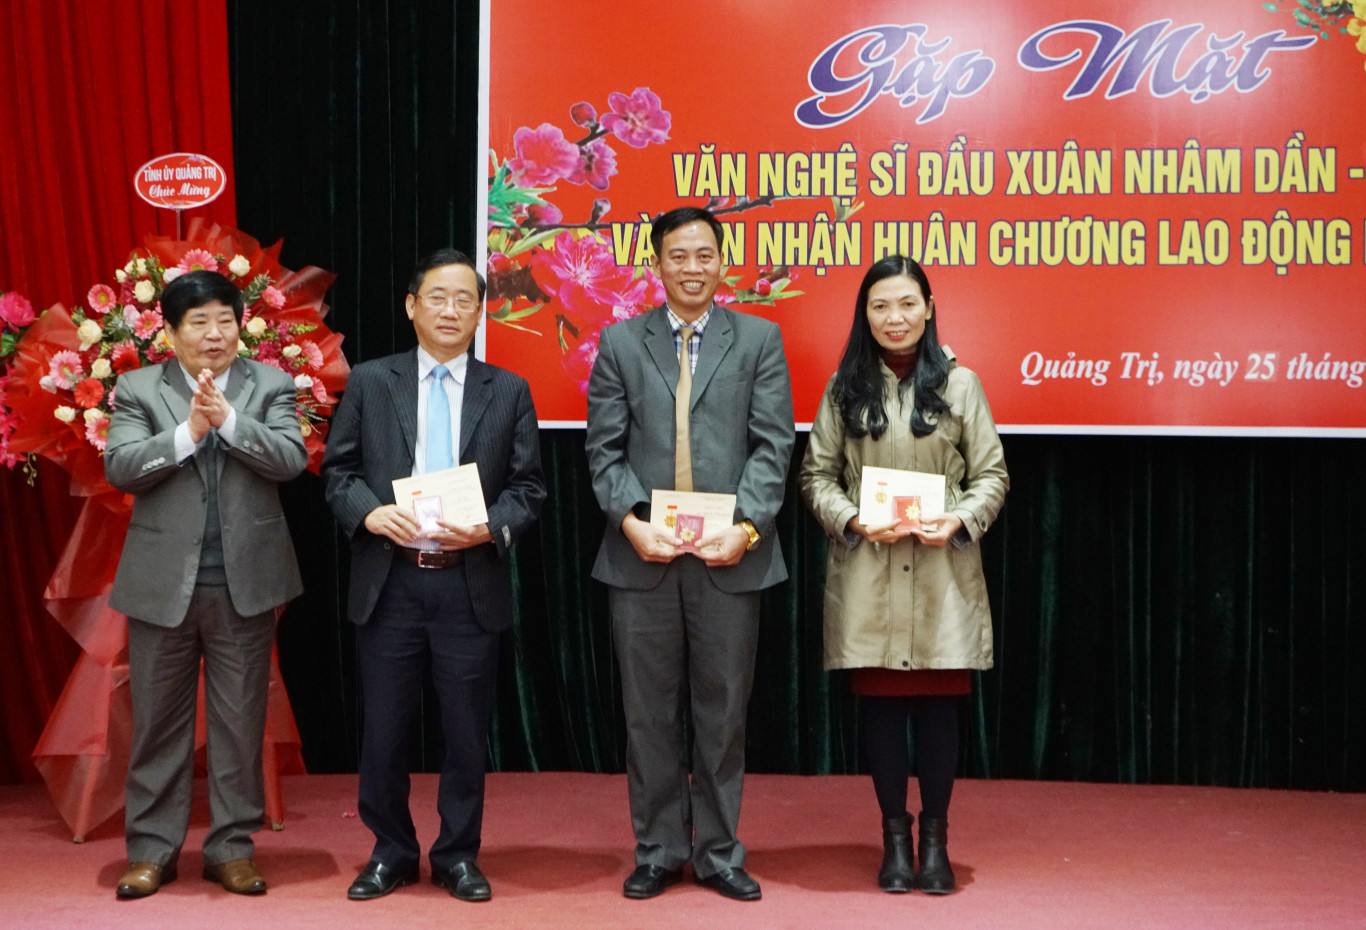 Thừa ủy quyền của Liên hiệp các Hội VHNT Việt Nam, Chủ tịch Hội VHNT tỉnh đã trao Kỷ niệm chương vì sự nghiệp văn học nghệ thuật Việt Nam cho các đồng chí lãnh đạo tỉnh, các sở ban ngành